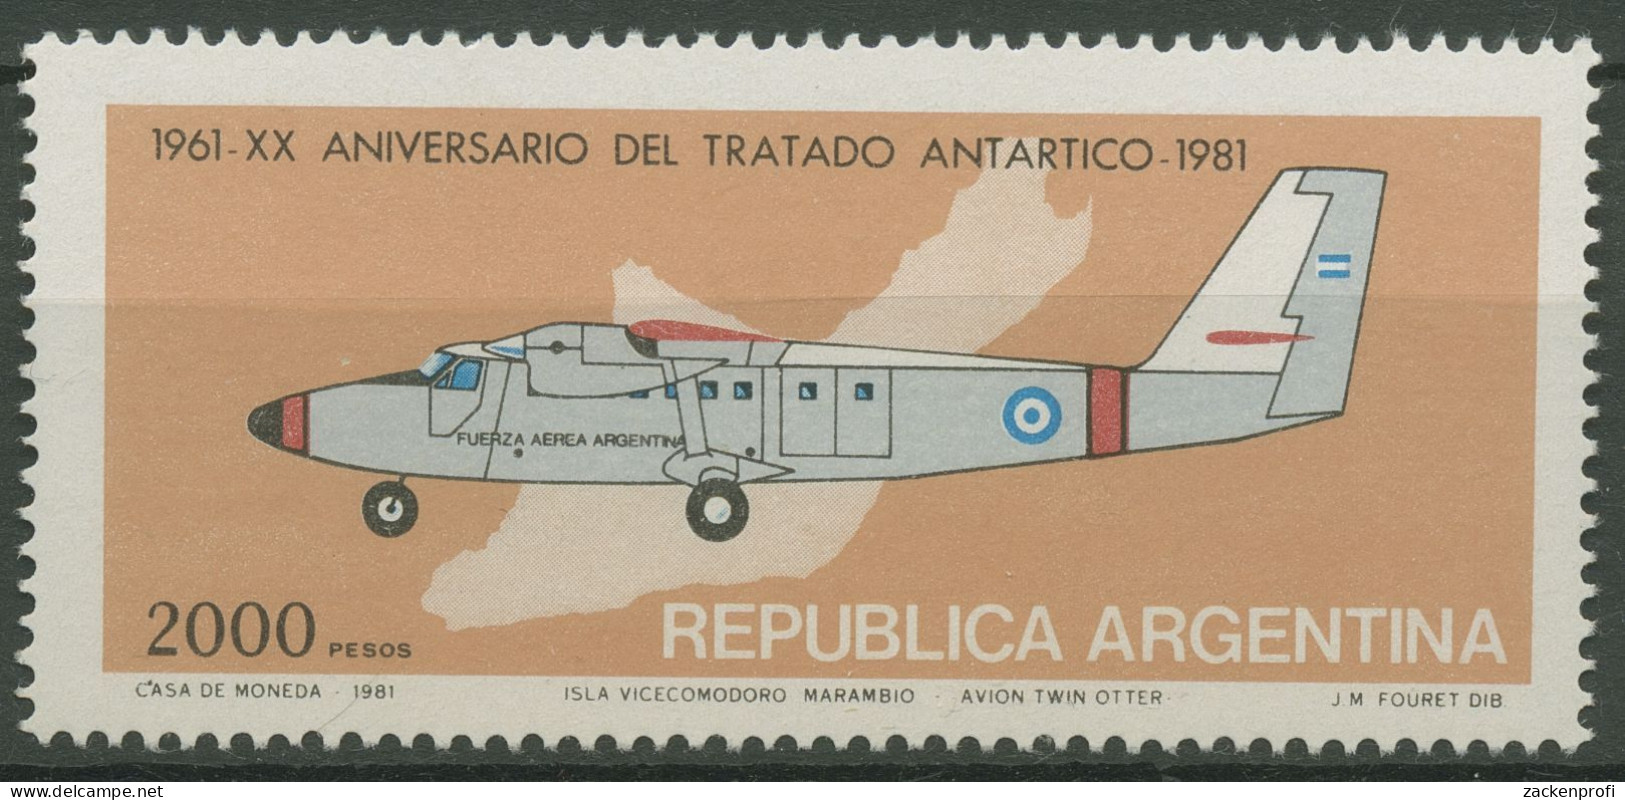 Argentinien 1981 Antarktisvertrag Schiff Flugzeug 1511 Postfrisch - Nuevos